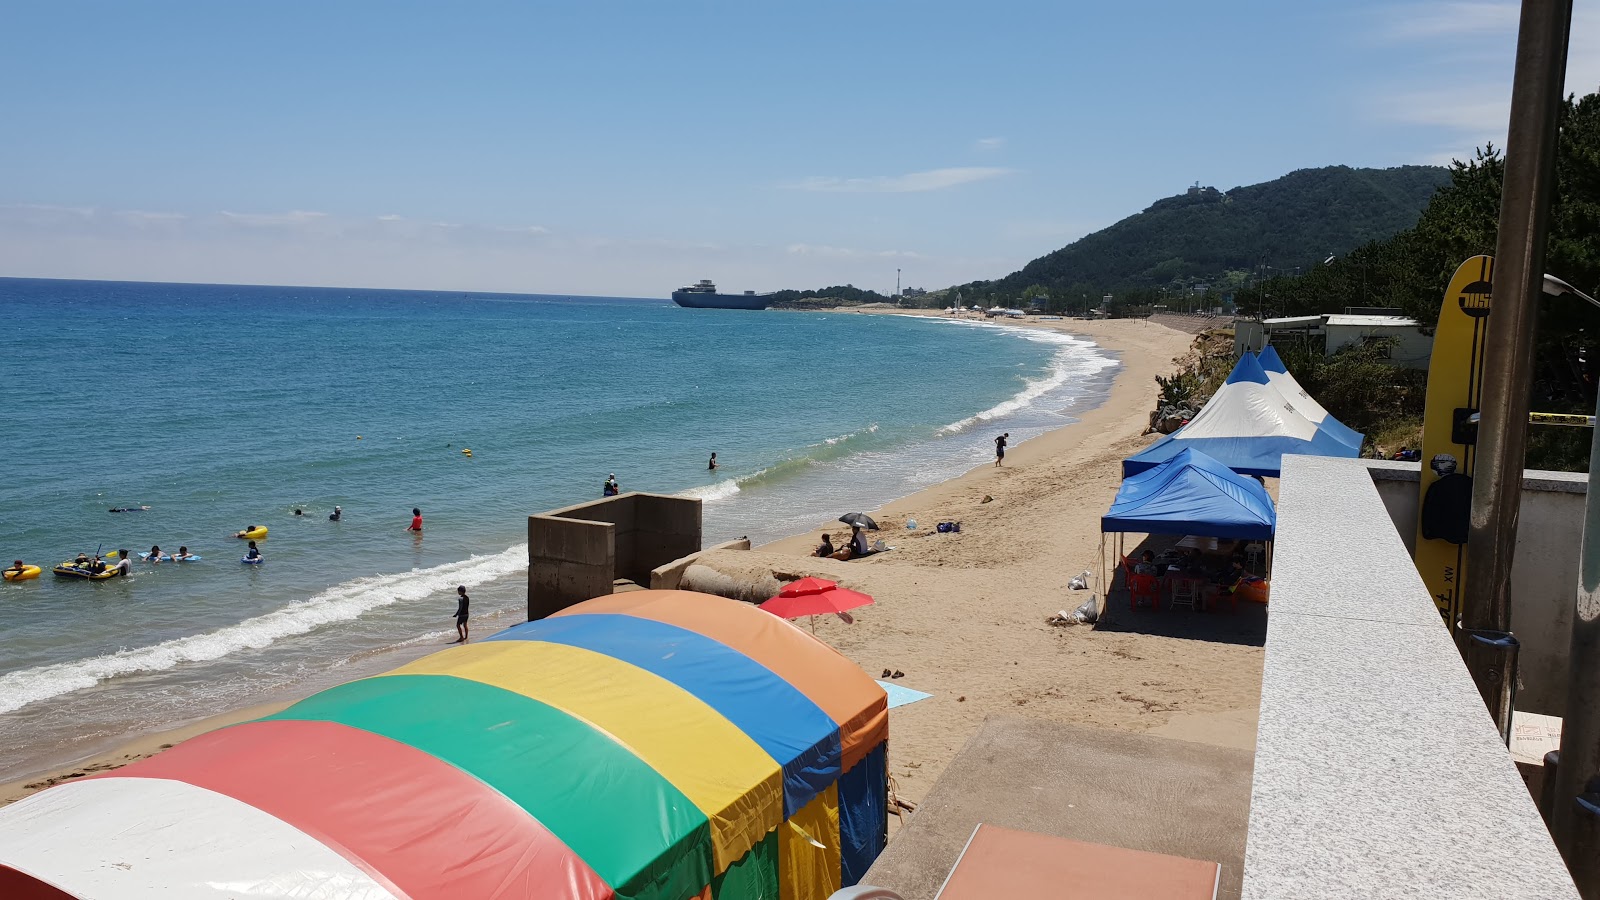 Fotografie cu Jangsa Beach zonele de facilități